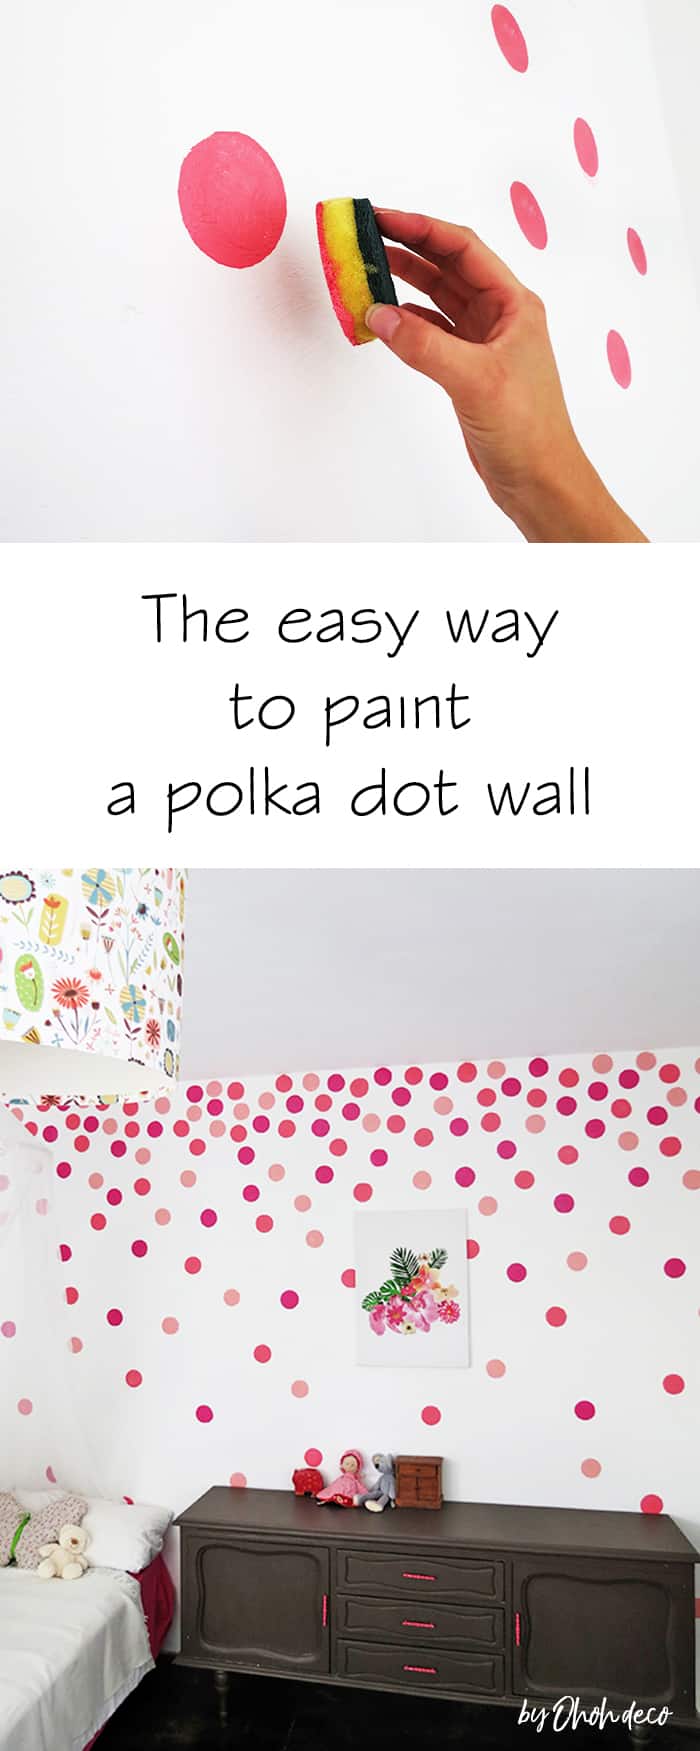 polka dot wall